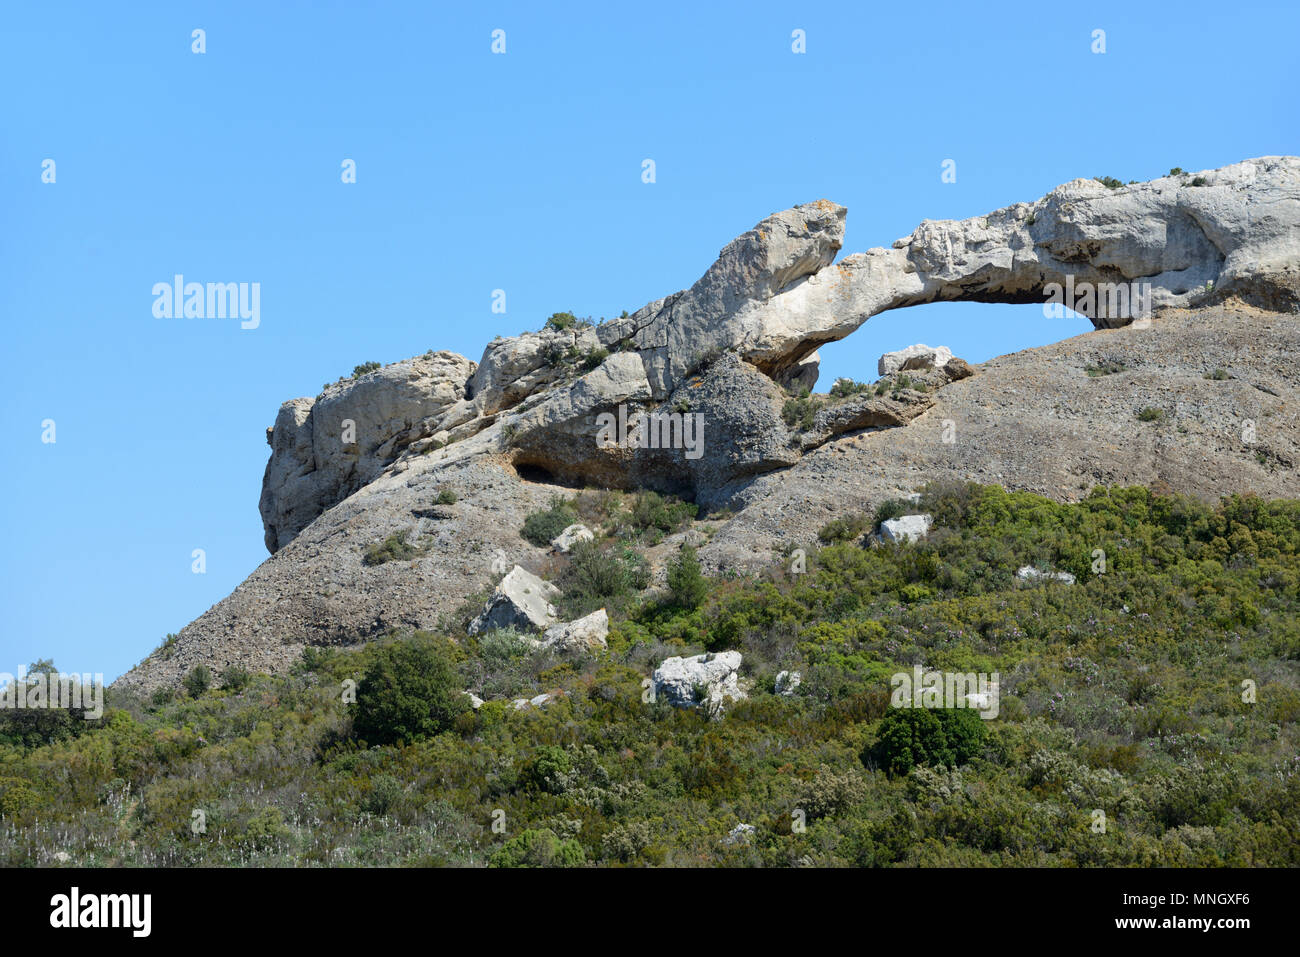 La Grande Arche de roche ou sur le passage de Terrevaine Route des Crêtes, Parc National des Calanques, La Ciotat Provence France Banque D'Images